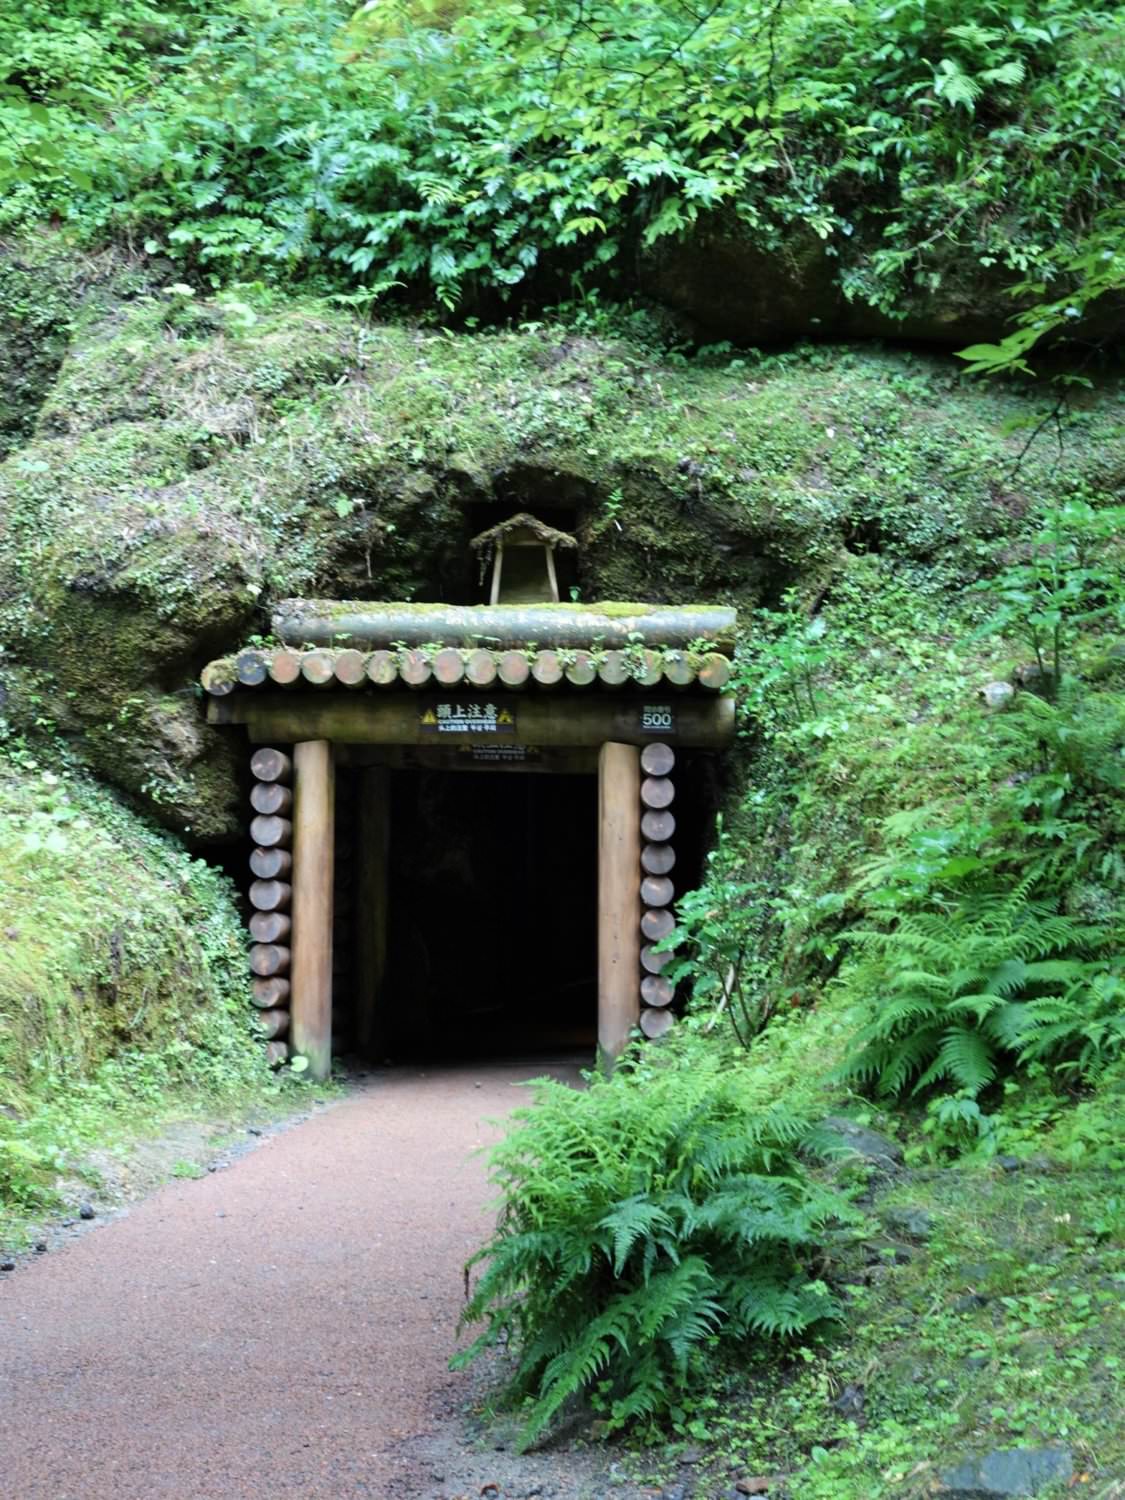 Entrance to Ryugenji Mabu Mine Shaft